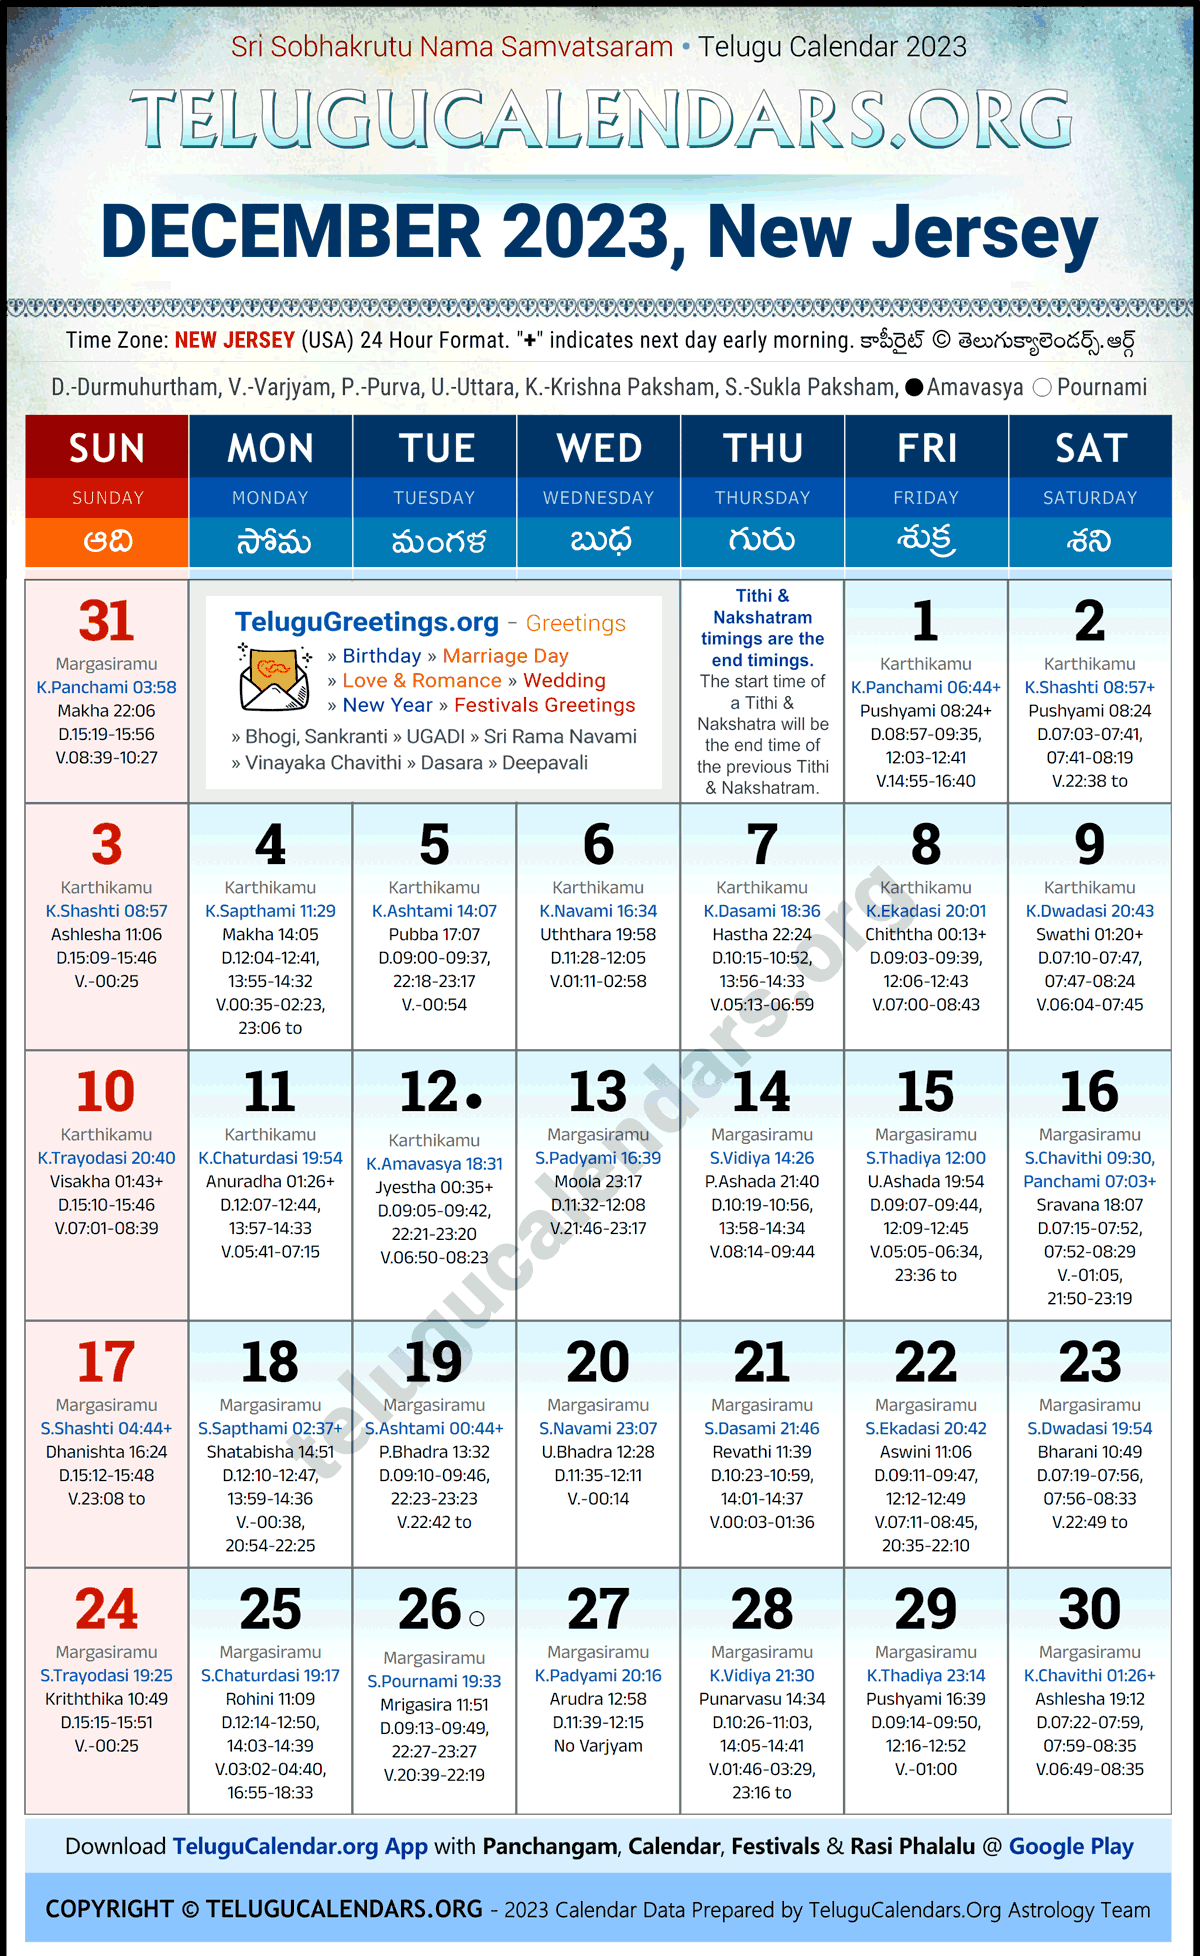 Telugu Calendar 2023 December Festivals for New Jersey